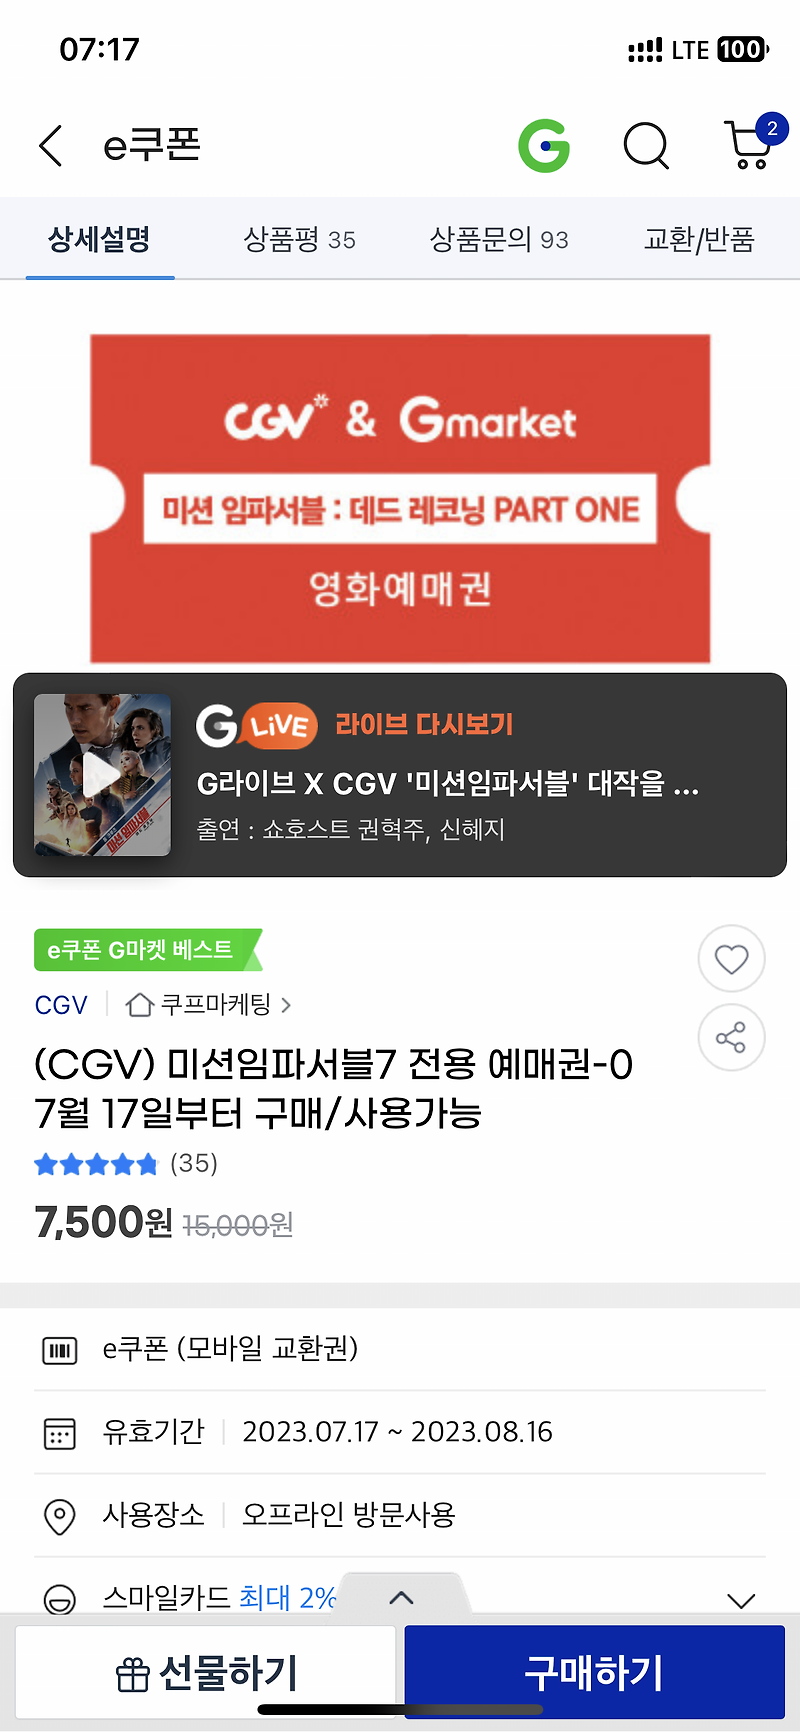 미션임파서블 데드 레코닝 파트원 CGV 7500원 예매권